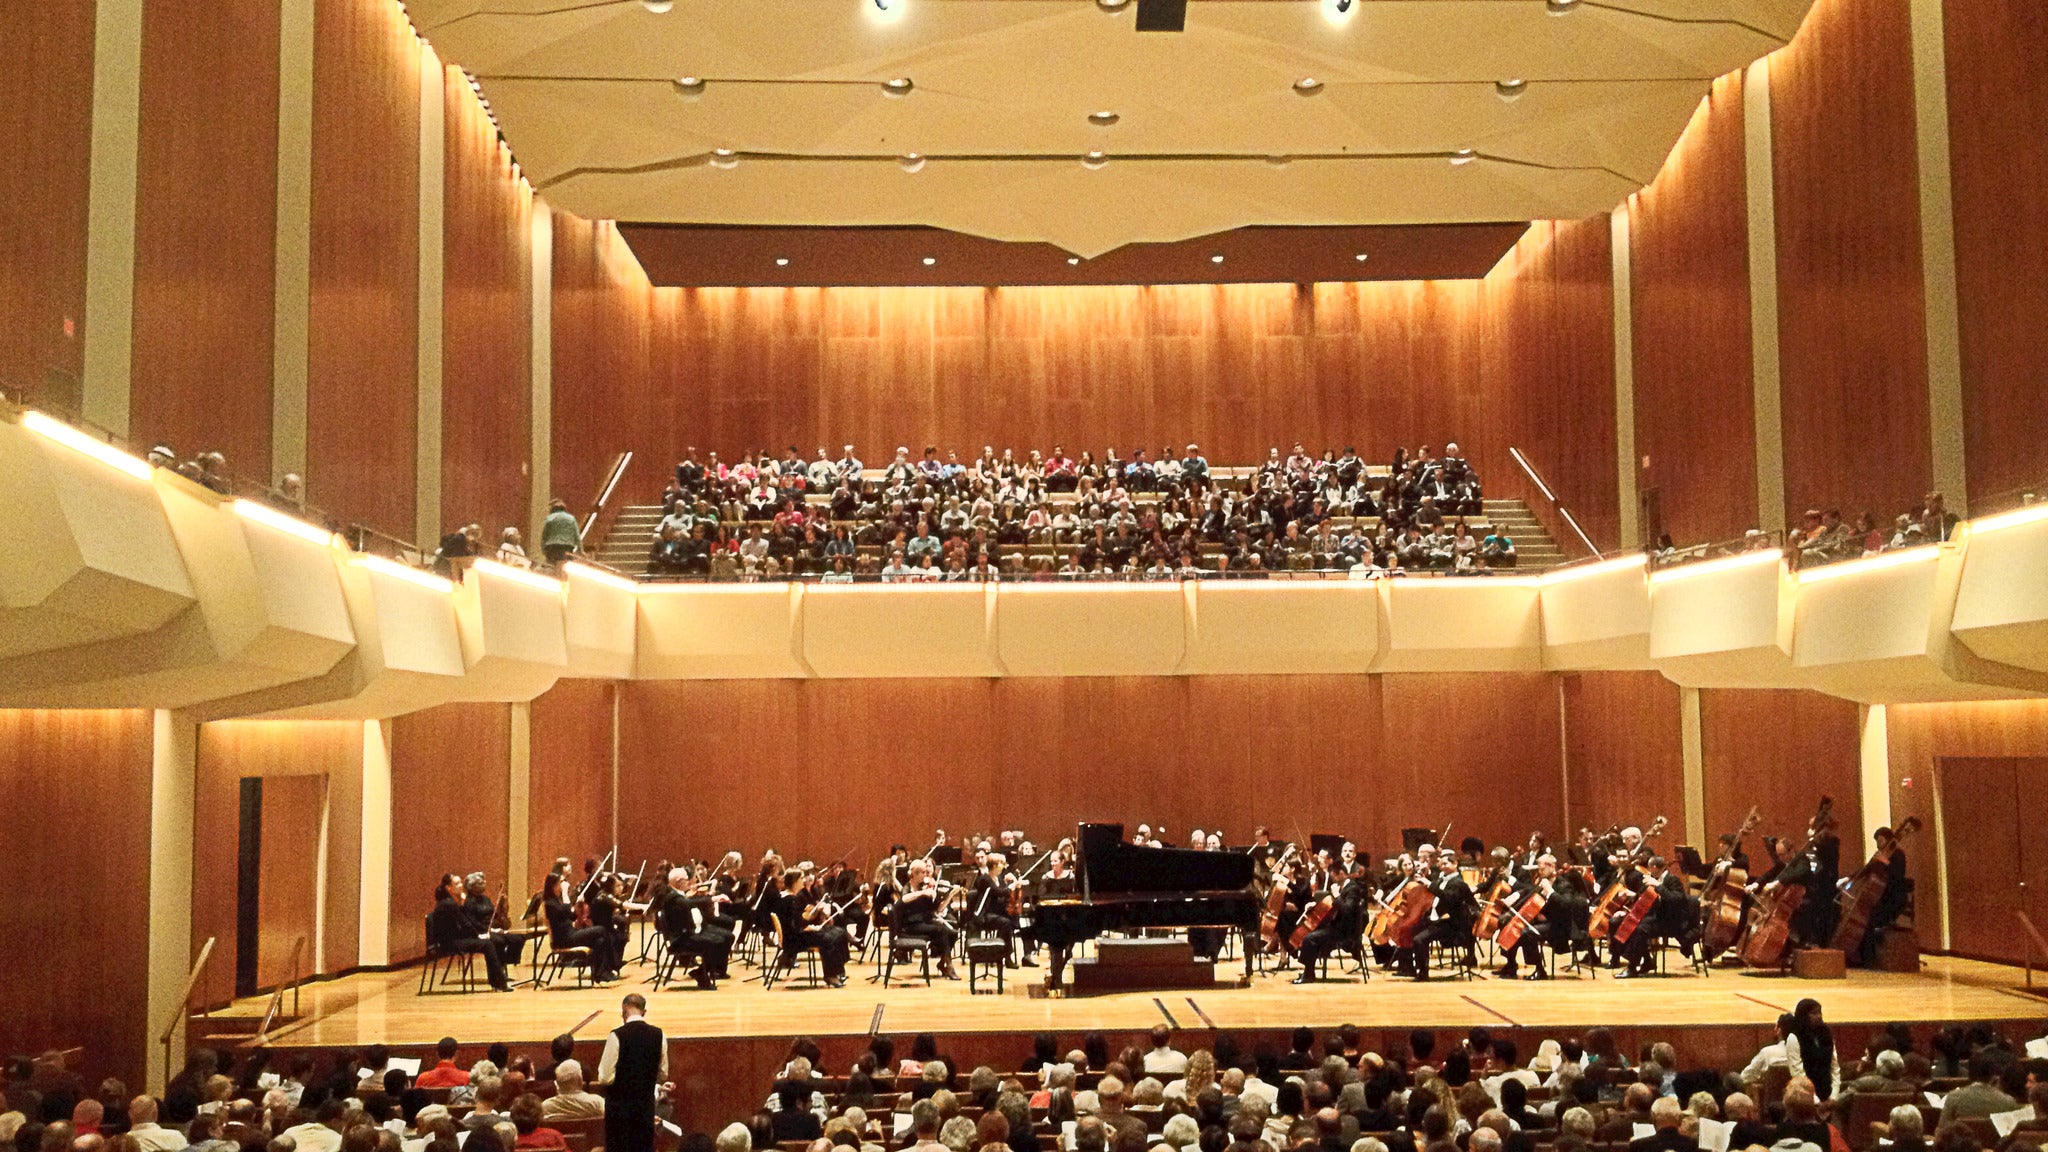 St. Louis Symphony at Jesse Auditorium